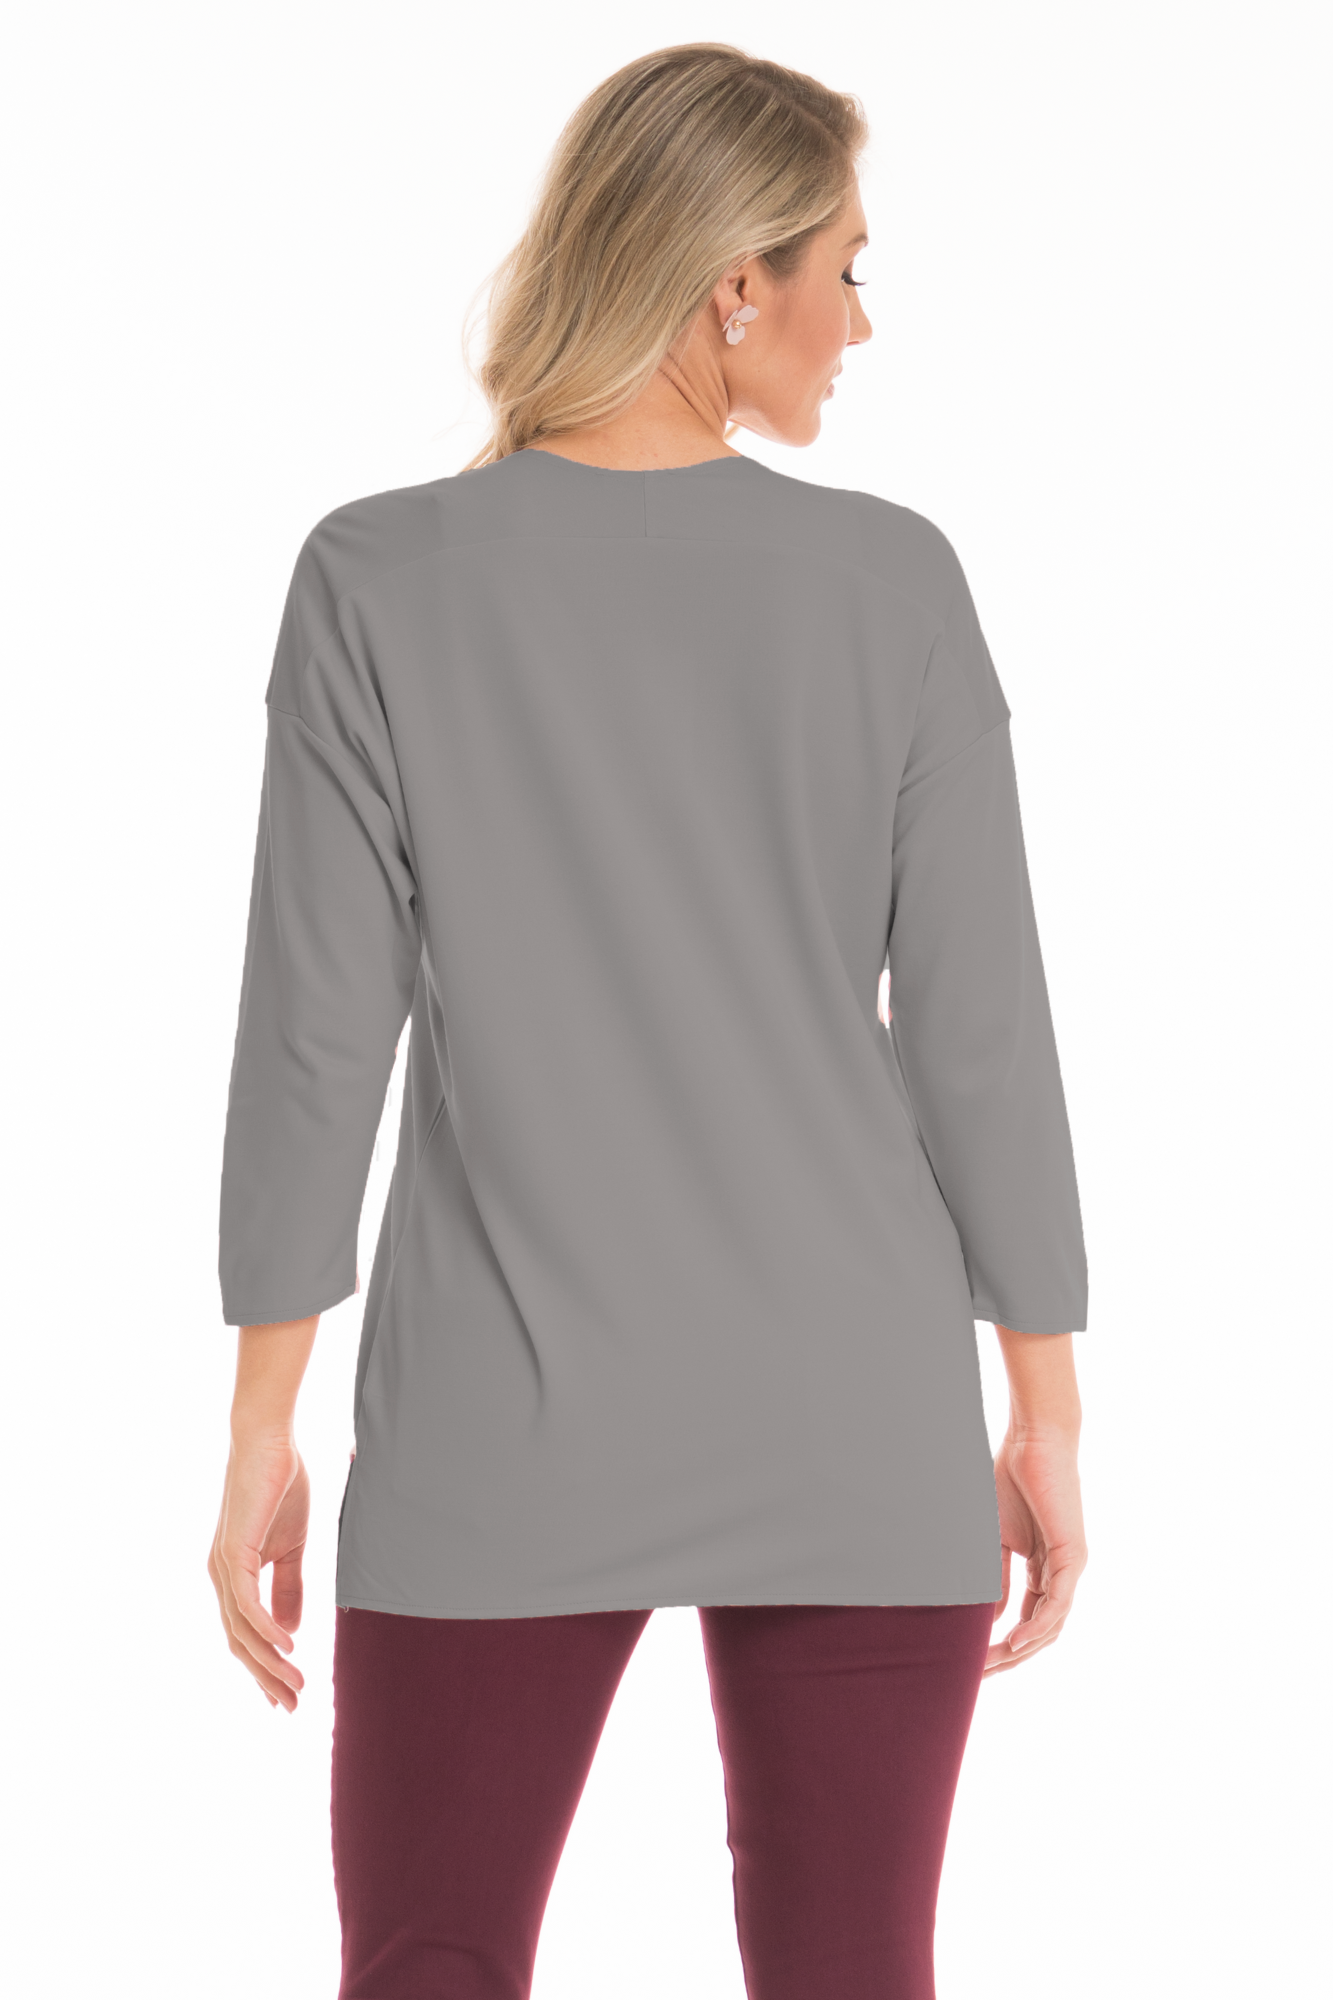 grey 3/4 sleeves top